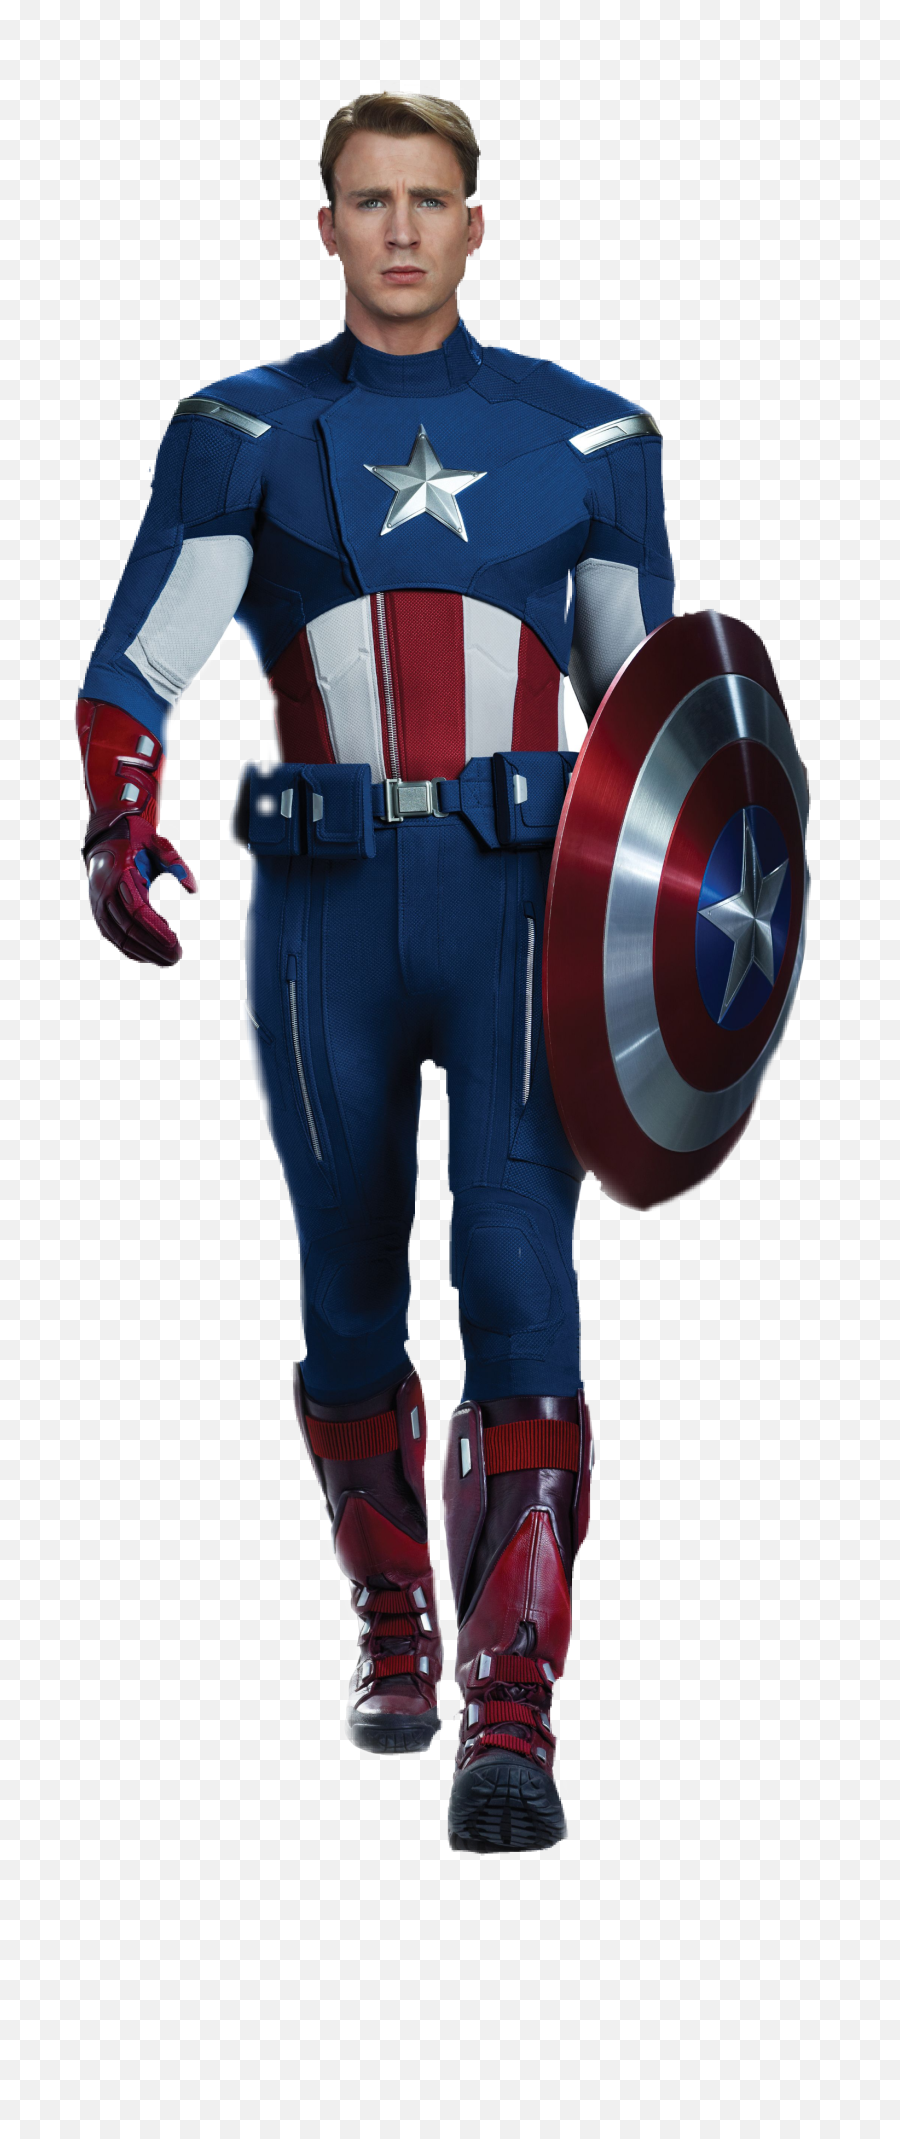 Marvel Avengers Alliance Hulk Thor Juggernaut Betty Ross - Chris Evans In Captain America Suit Emoji,Captain America Emoji